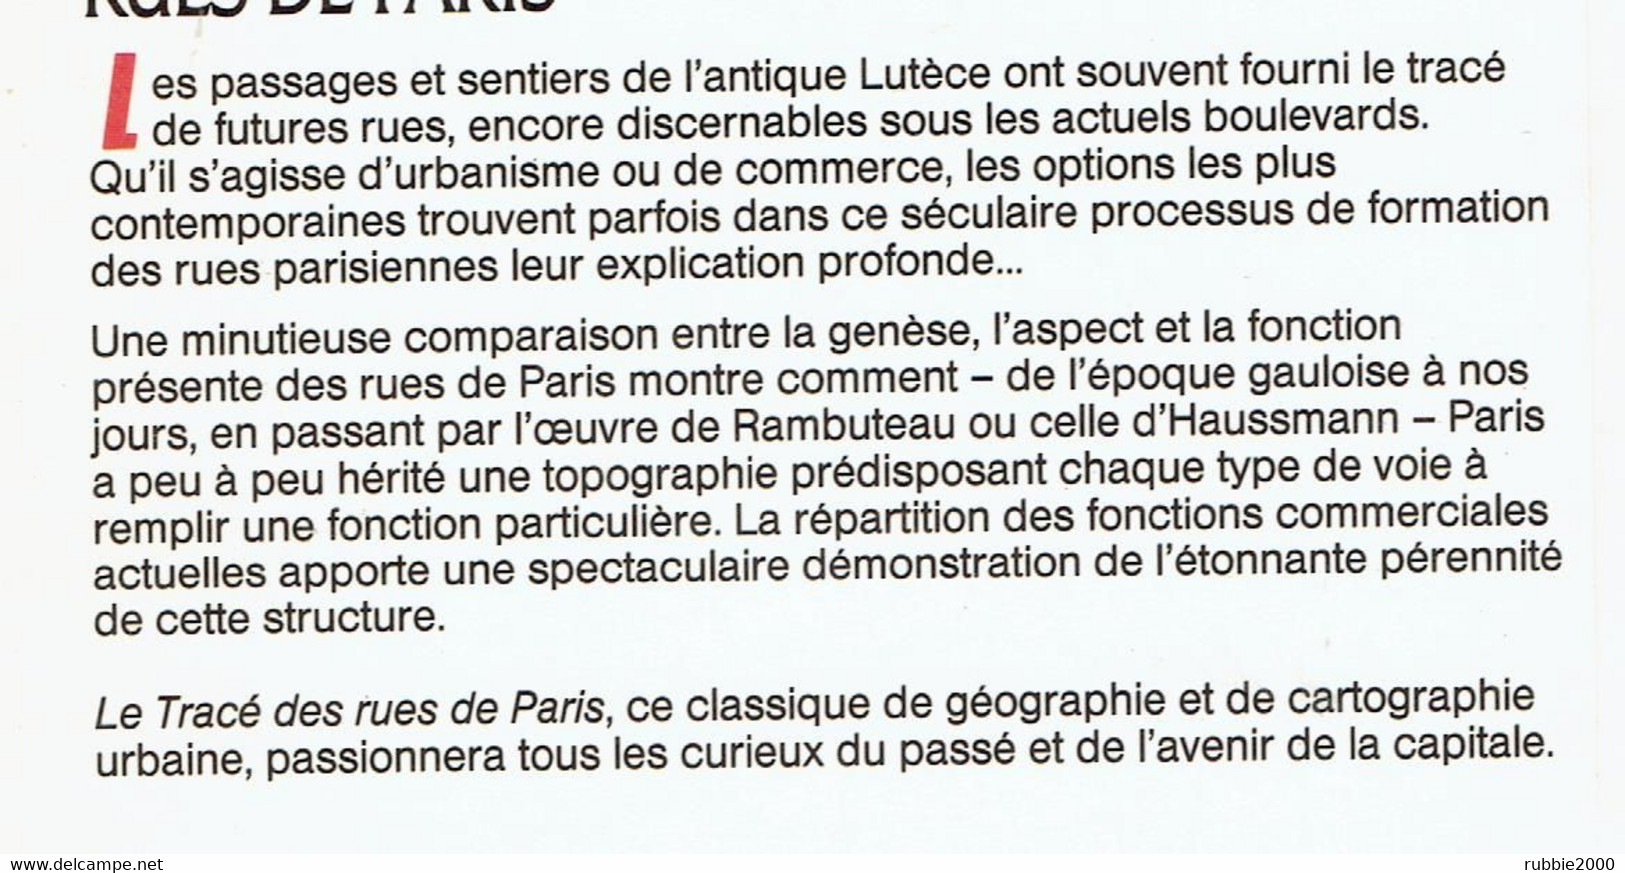 LE TRACE DES RUES DE PARIS 1988 BERNARD ROULEAU VOIE VOIRIE CIRCULATION QUARTIER RUE CHEMIN REMPART HAUSSMANN PLACE - Parigi